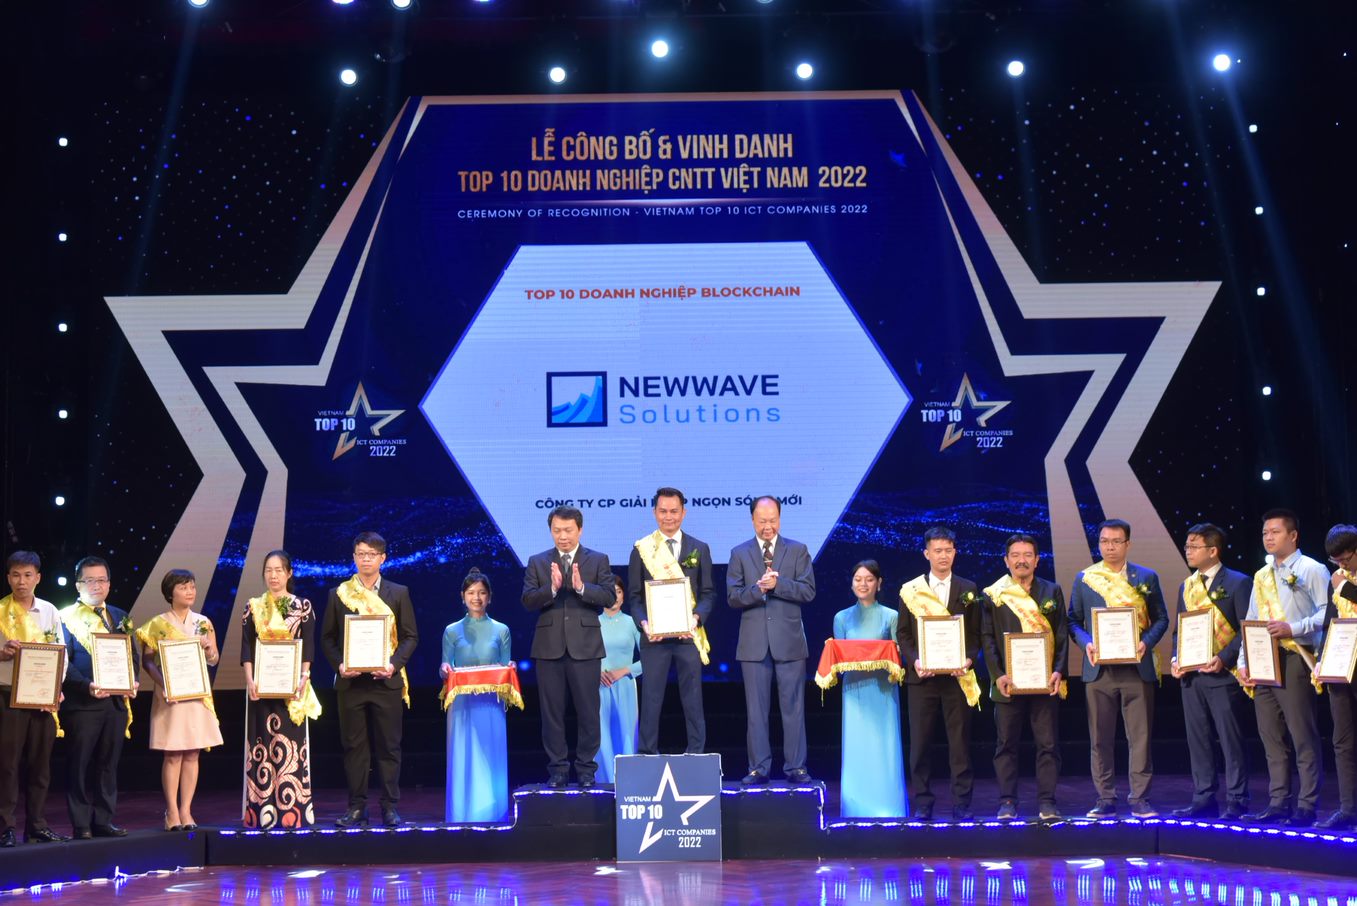 Ông Tô Quang Duy - CEO của Newwave Solutions nhận giải thưởng  Top 10 Doanh nghiệp Blockchain Việt Nam 2022